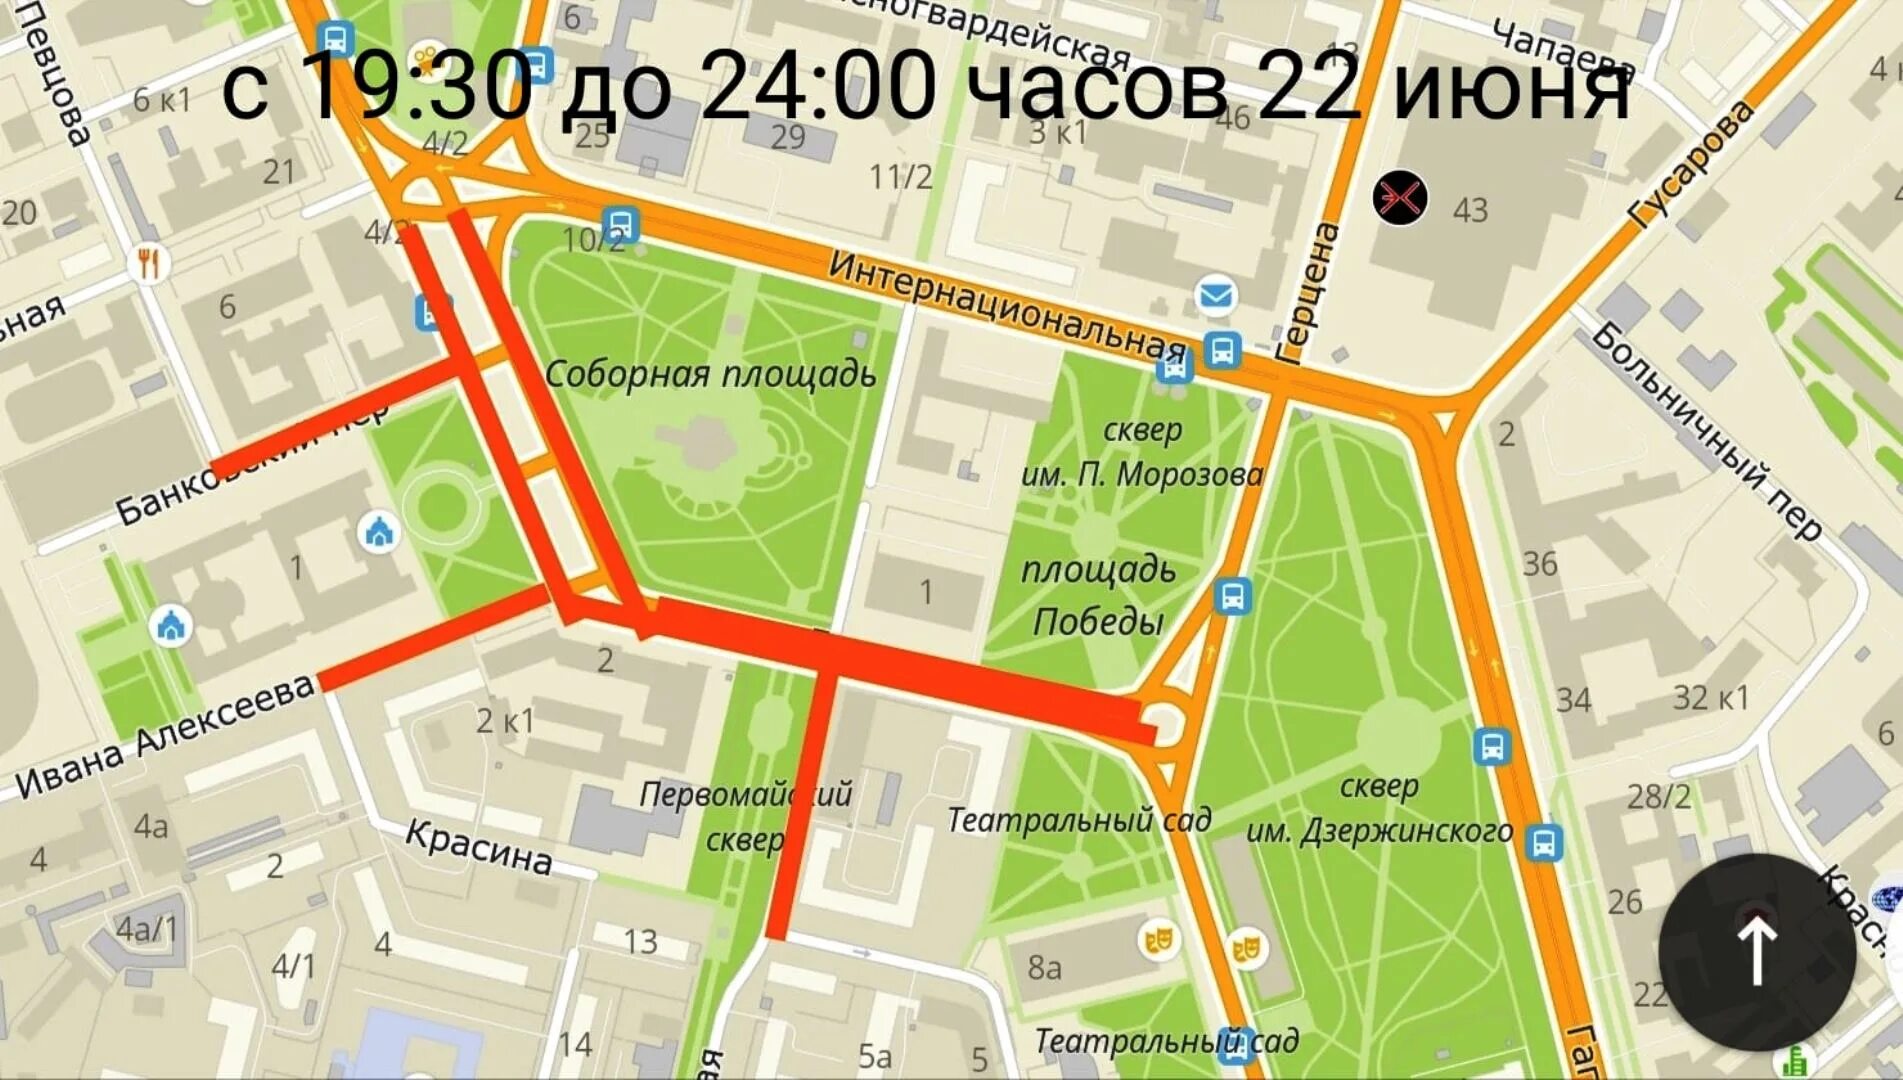 Омск где пройти. Схема перекрытых улиц в Омске 6 июня. Какие улицы перекрыты Омск. Какие улицы будут перекрыты завтра в Омске. Омск ограничения движения.